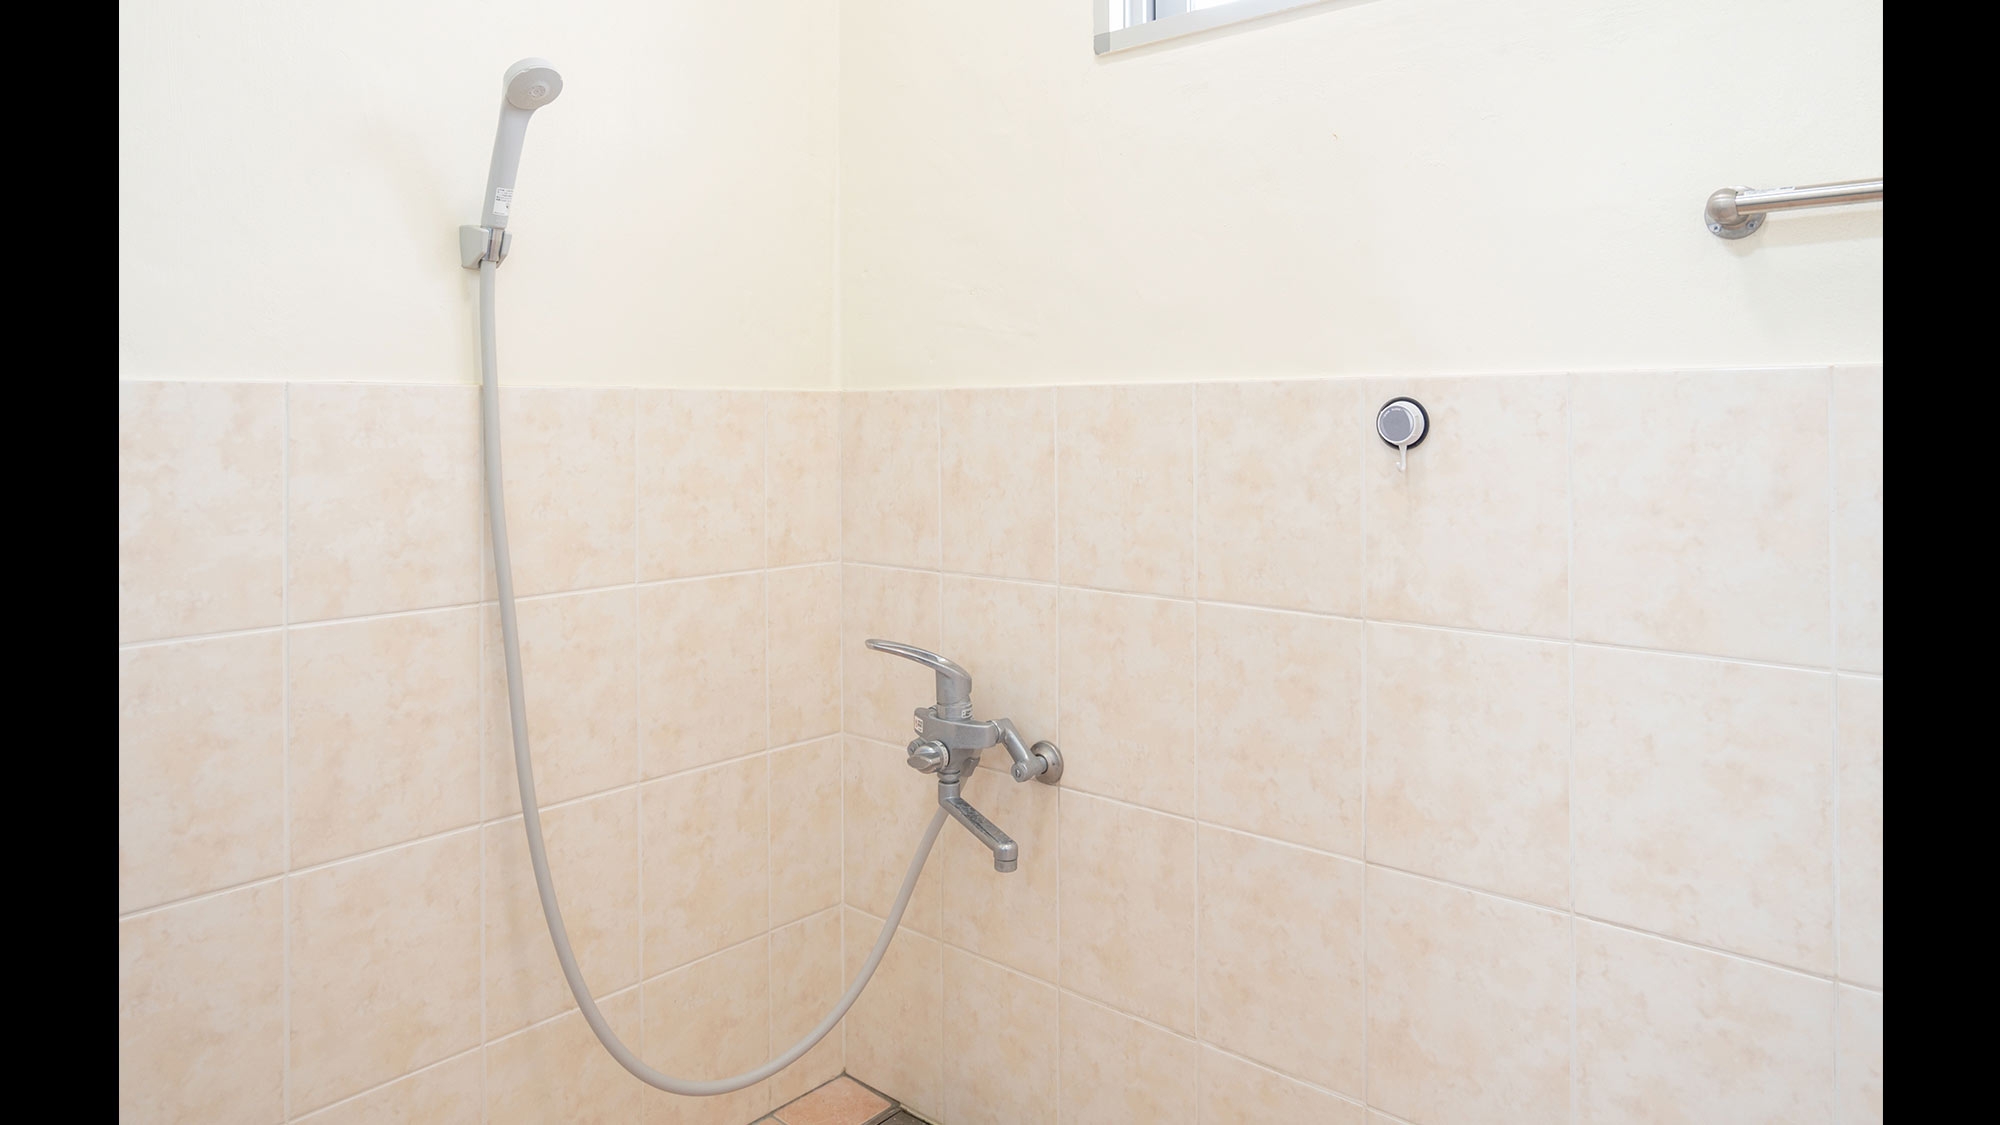 ・【A棟・バスルーム】浴槽を設置せずにシャワールームとして使用